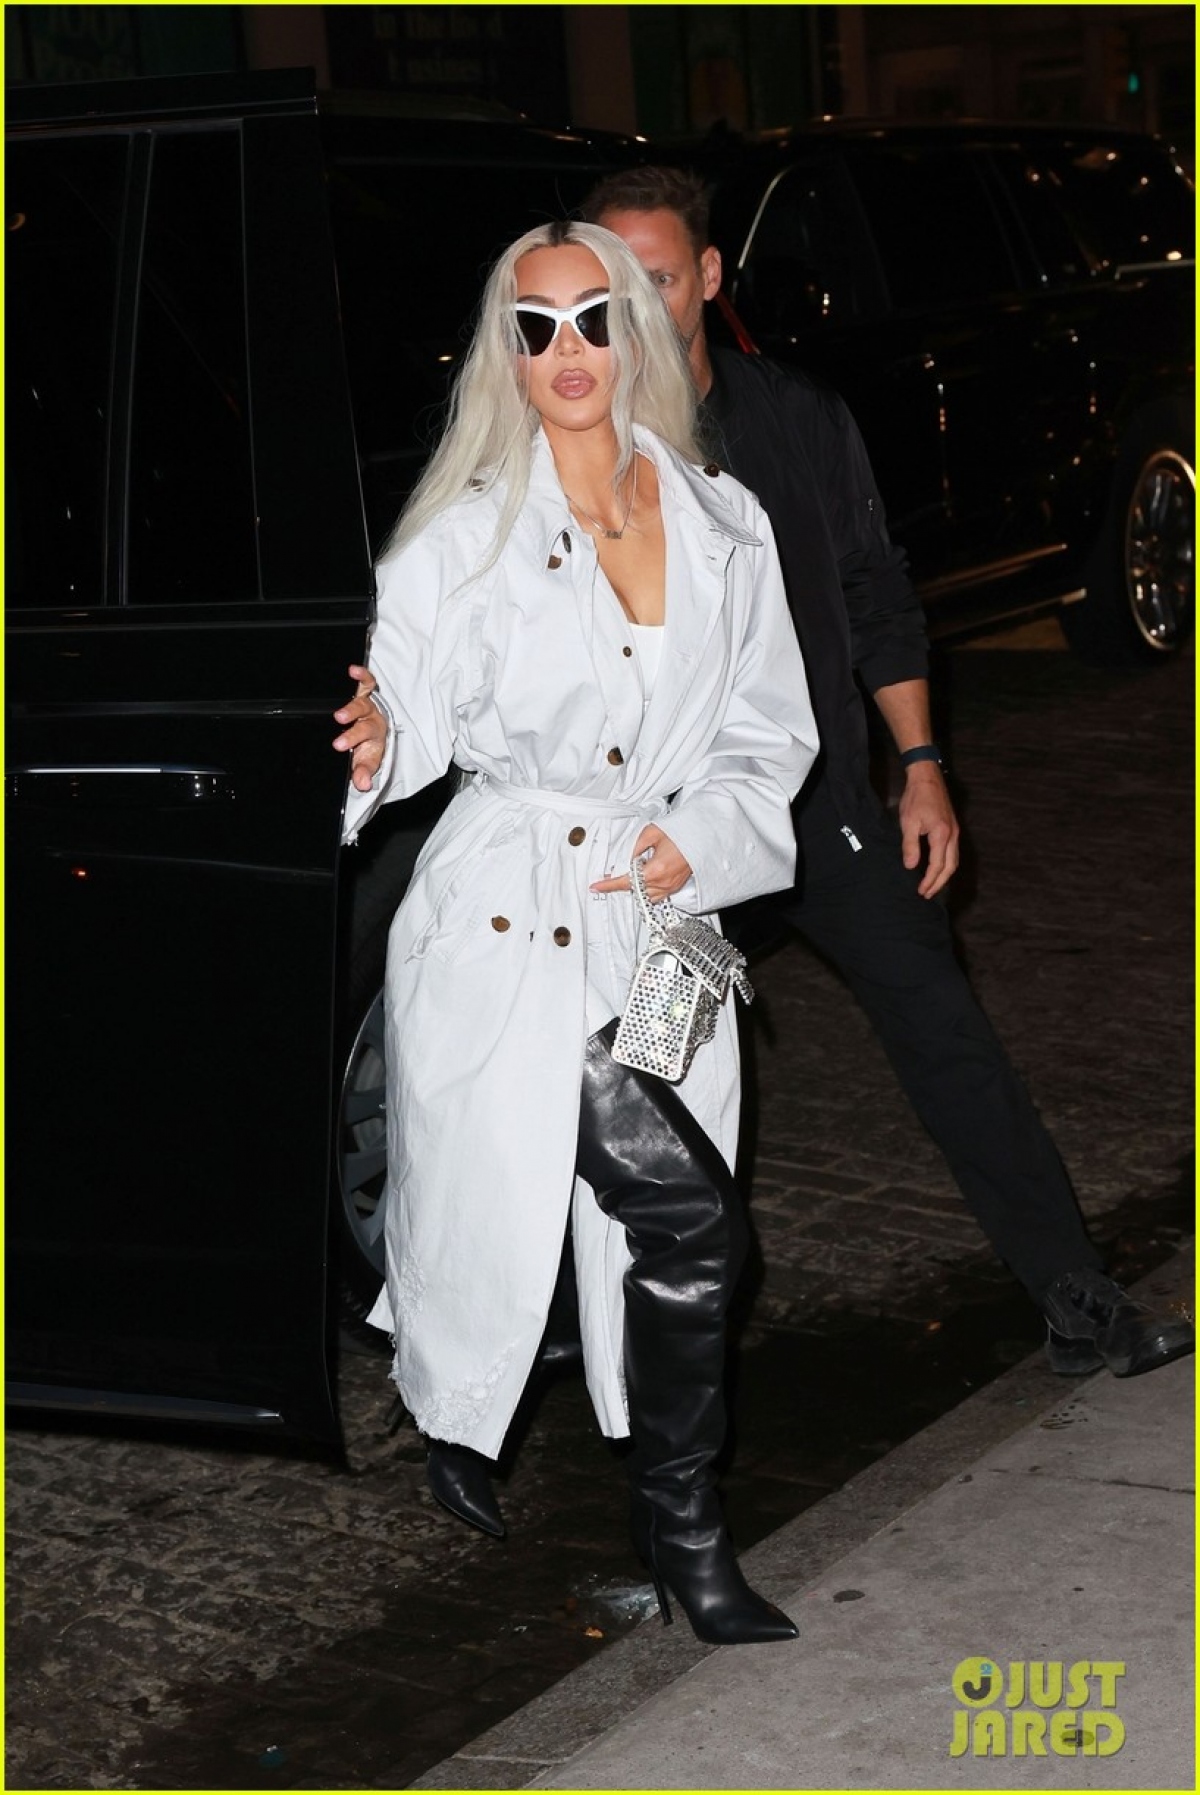 Kim Kardashian nhuộm tóc bạch kim, lên đồ sành điệu đi ăn tối cùng bạn bè - Ảnh 6.